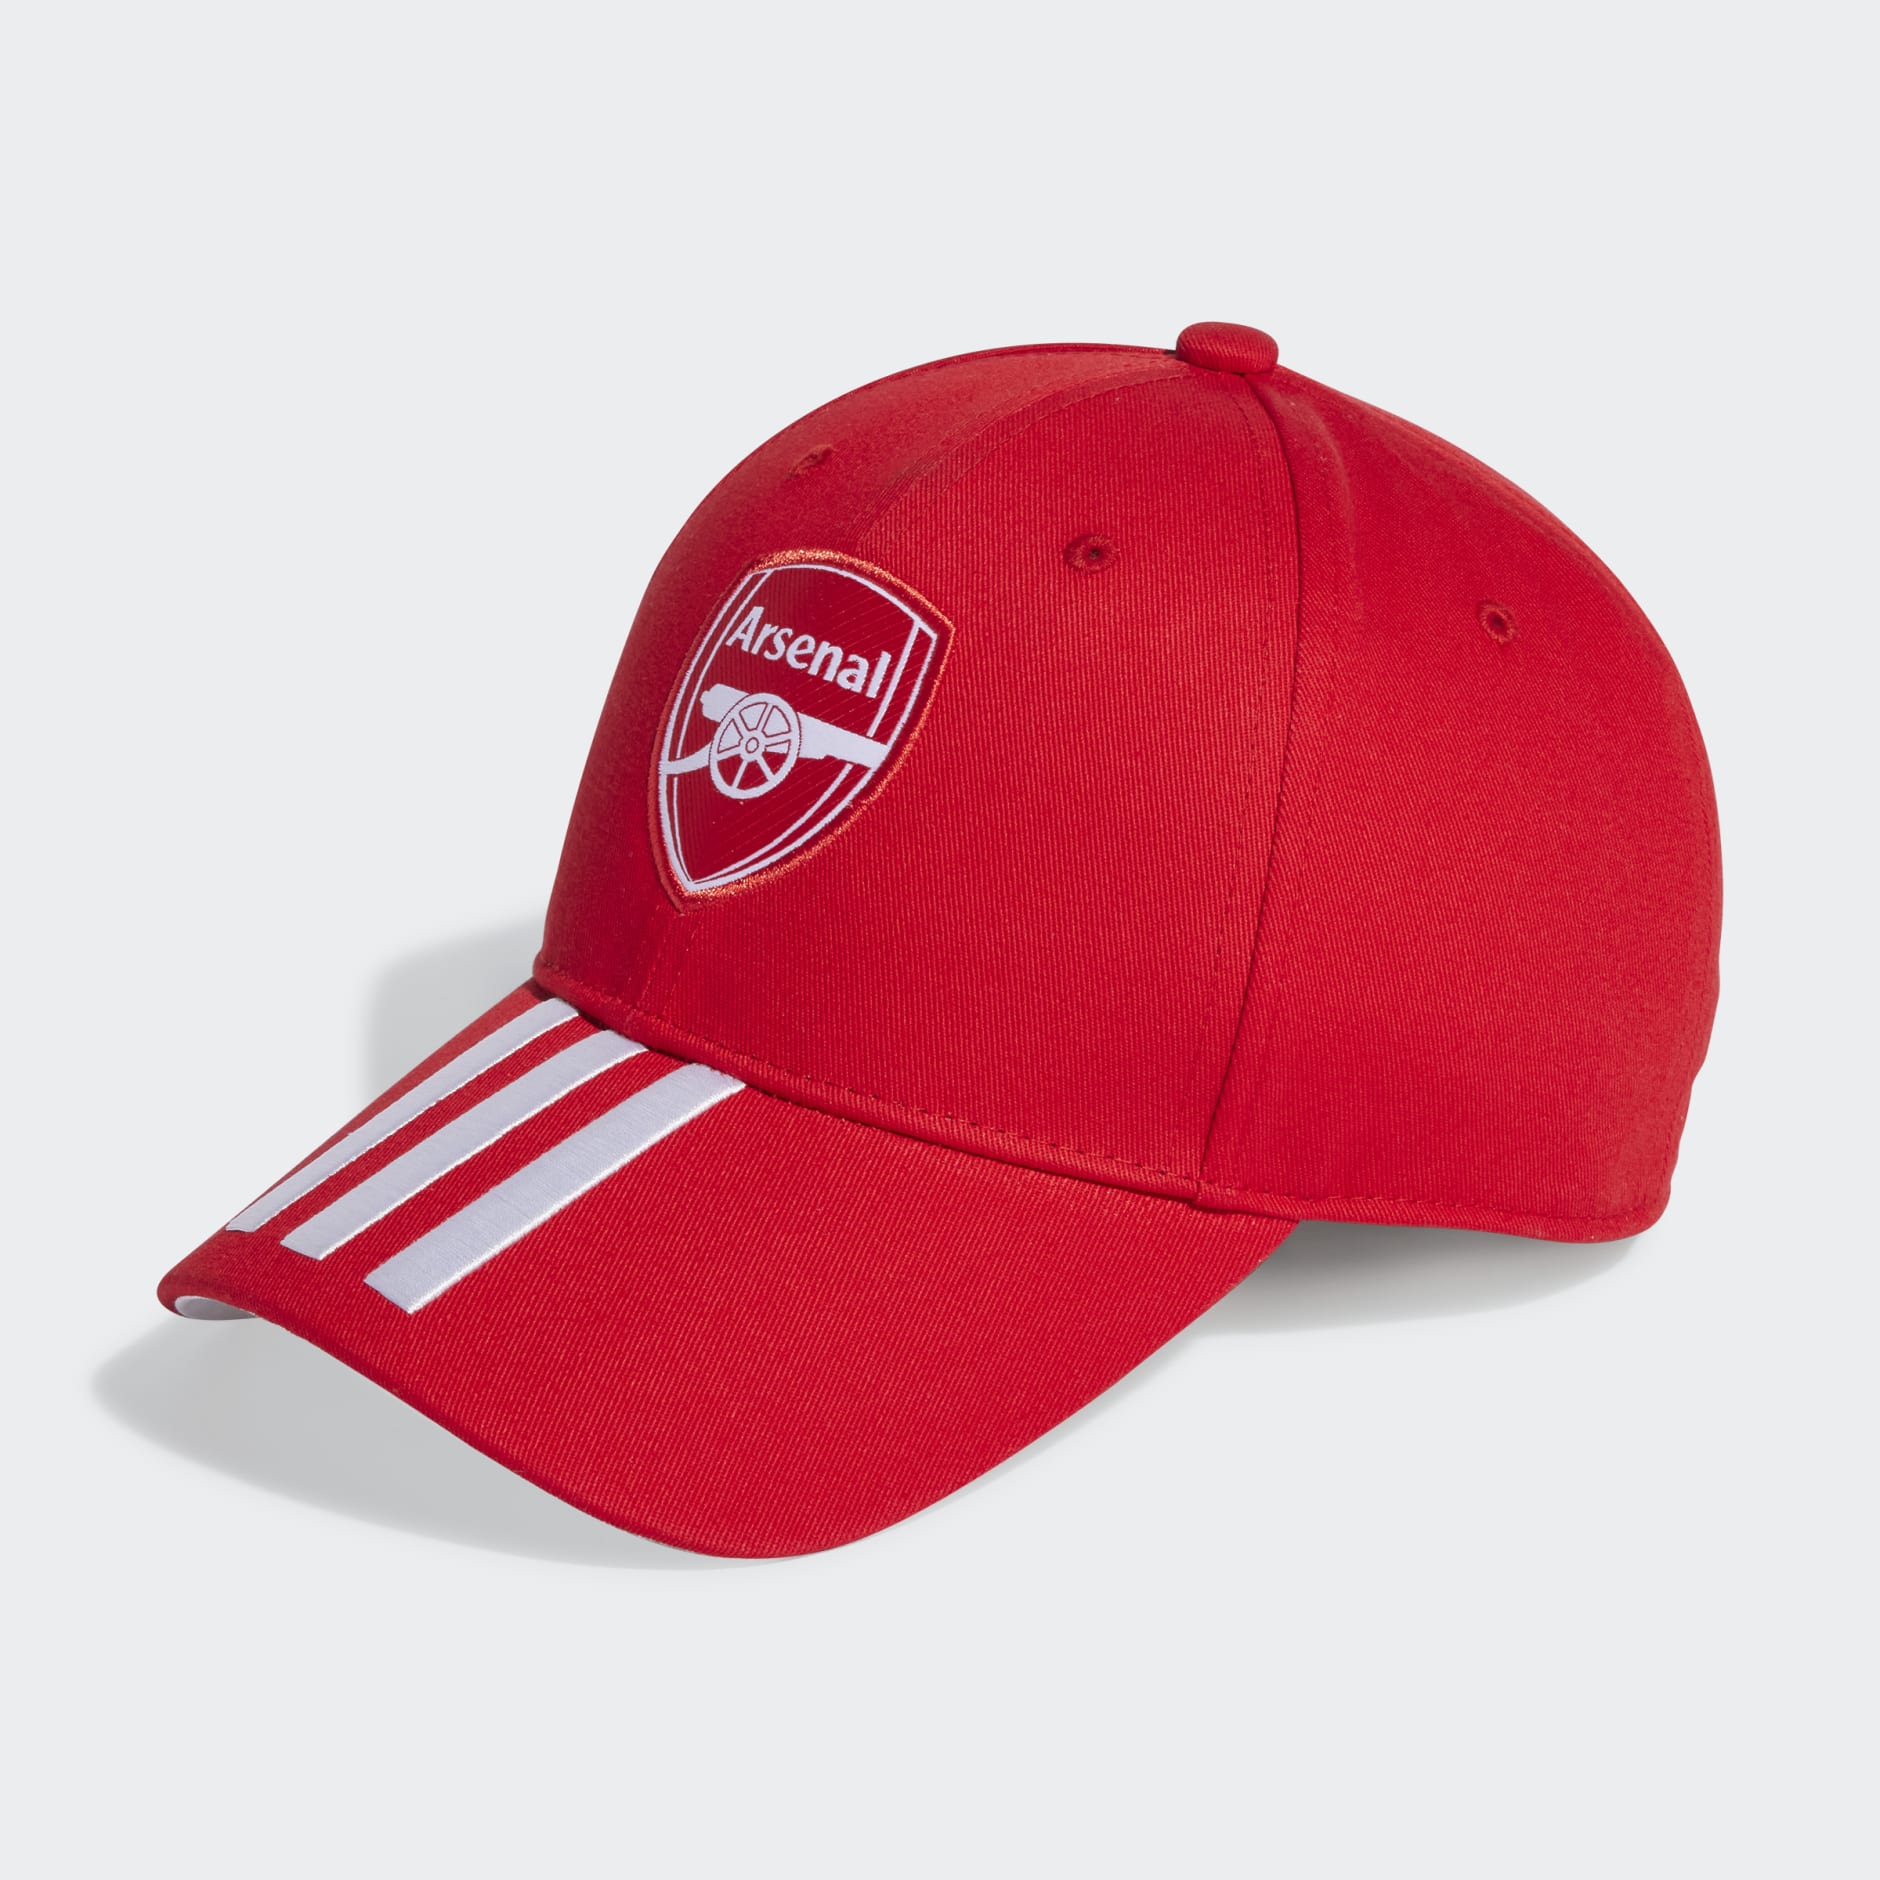 adidas Arsenal Baseball Cap - Red adidas LK